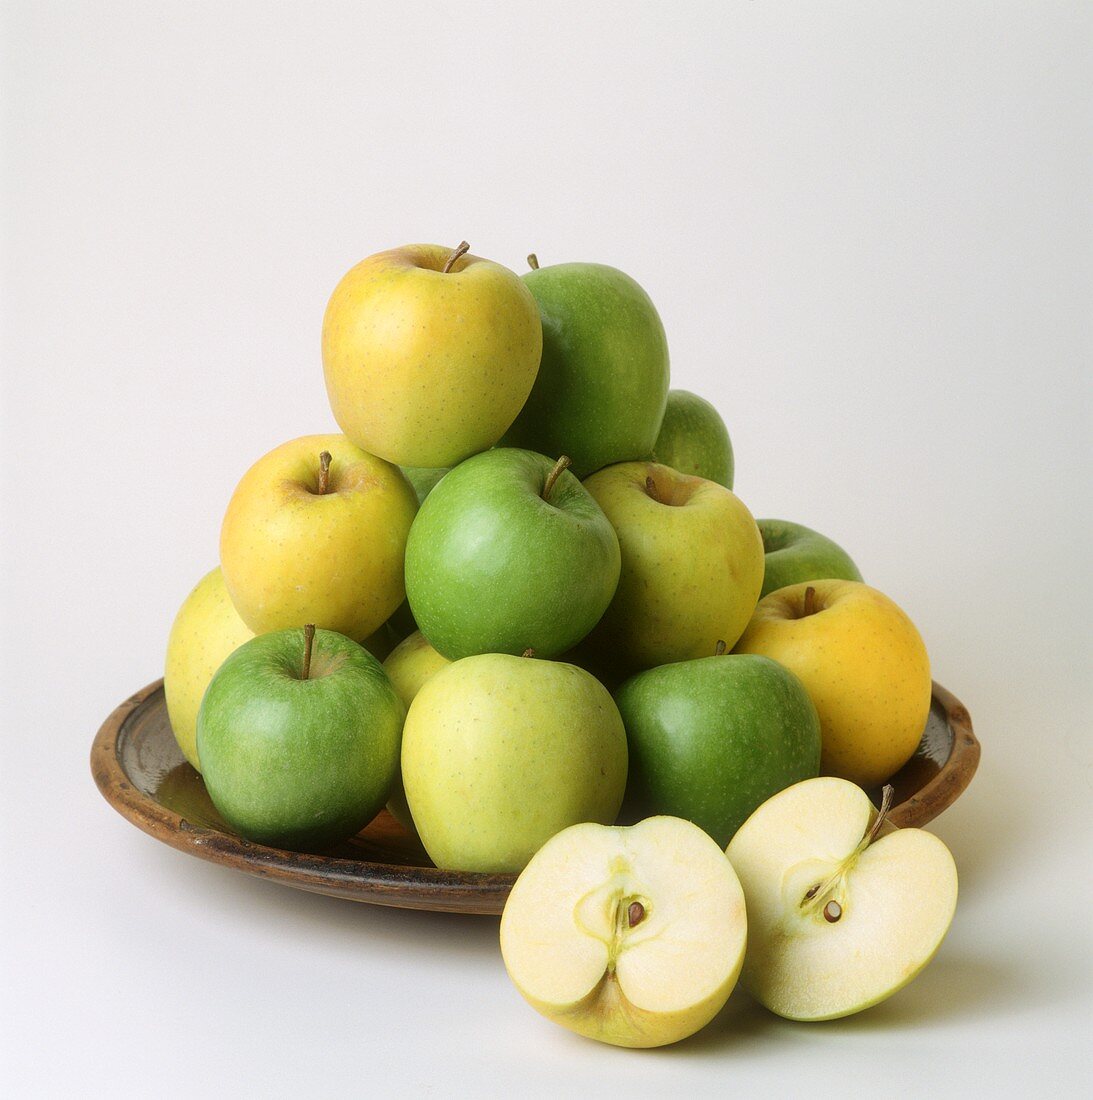 Äpfel auf einer Schale (Golden Delicious und Granny Smith)